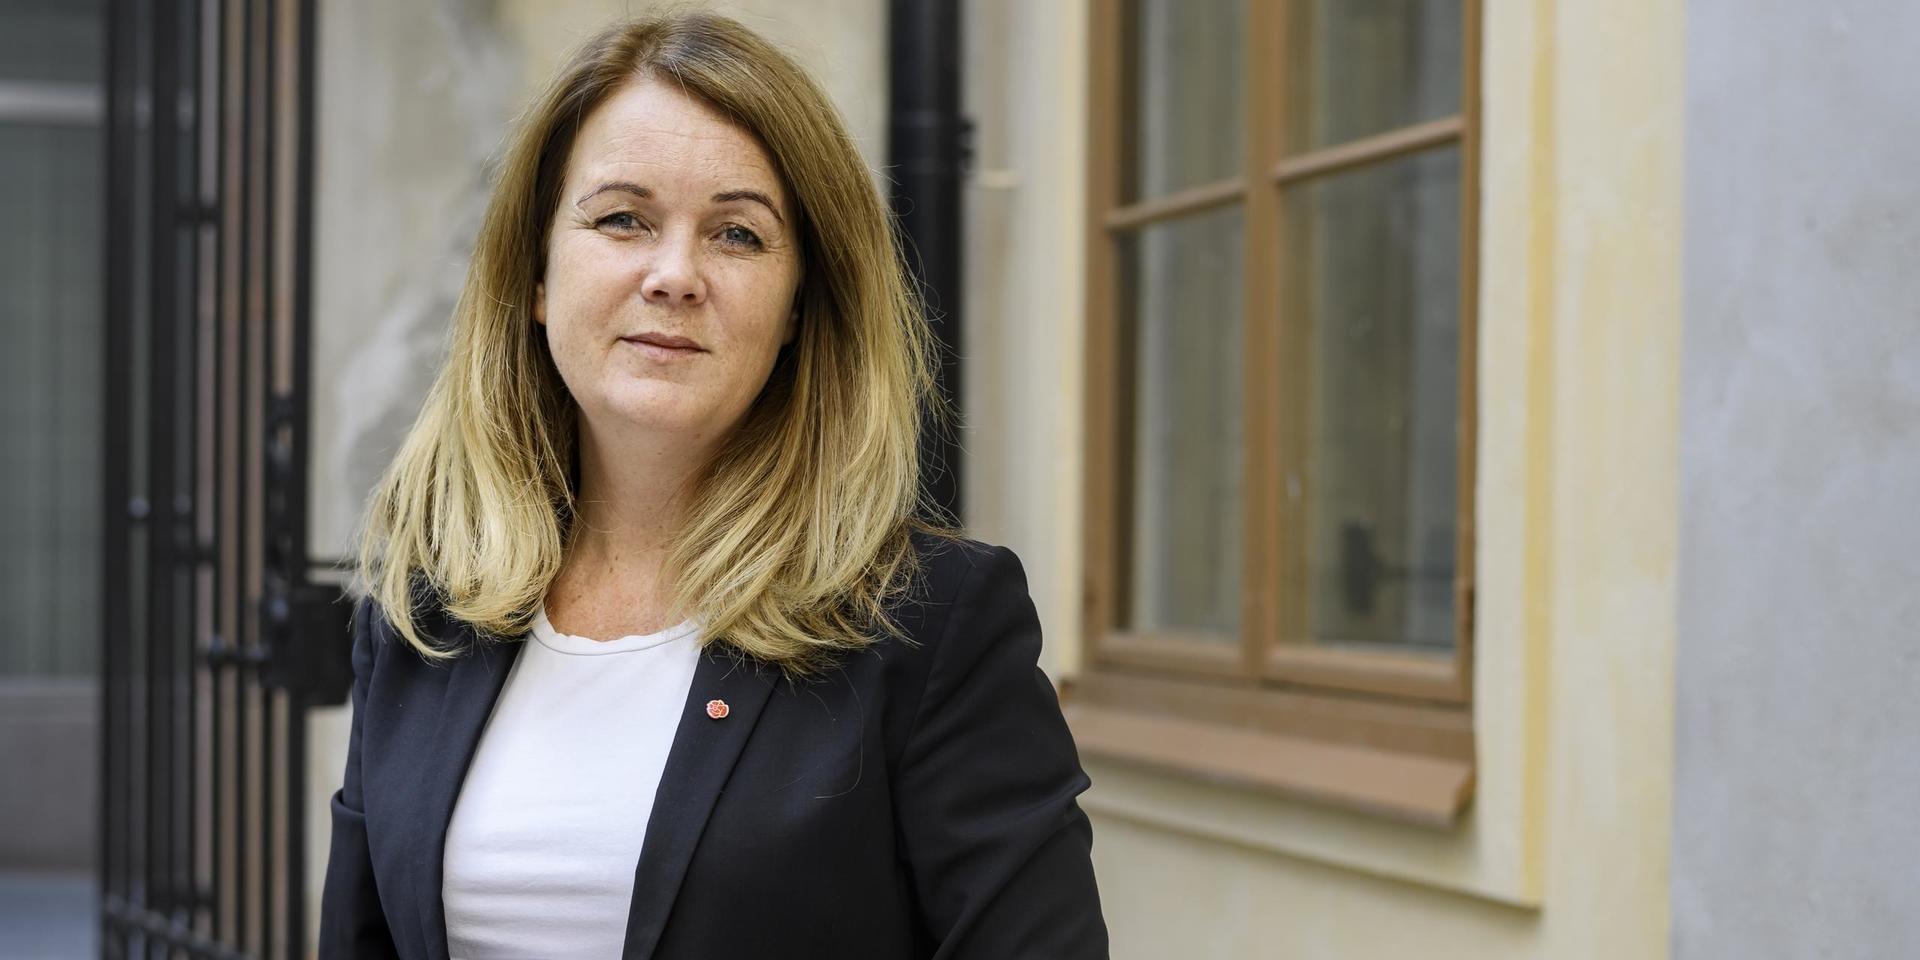 Socialdemokraten Jennie Nilsson bor i Halmstad men är uppvuxen i Hylte där hon också inledde sin politiska karriär.